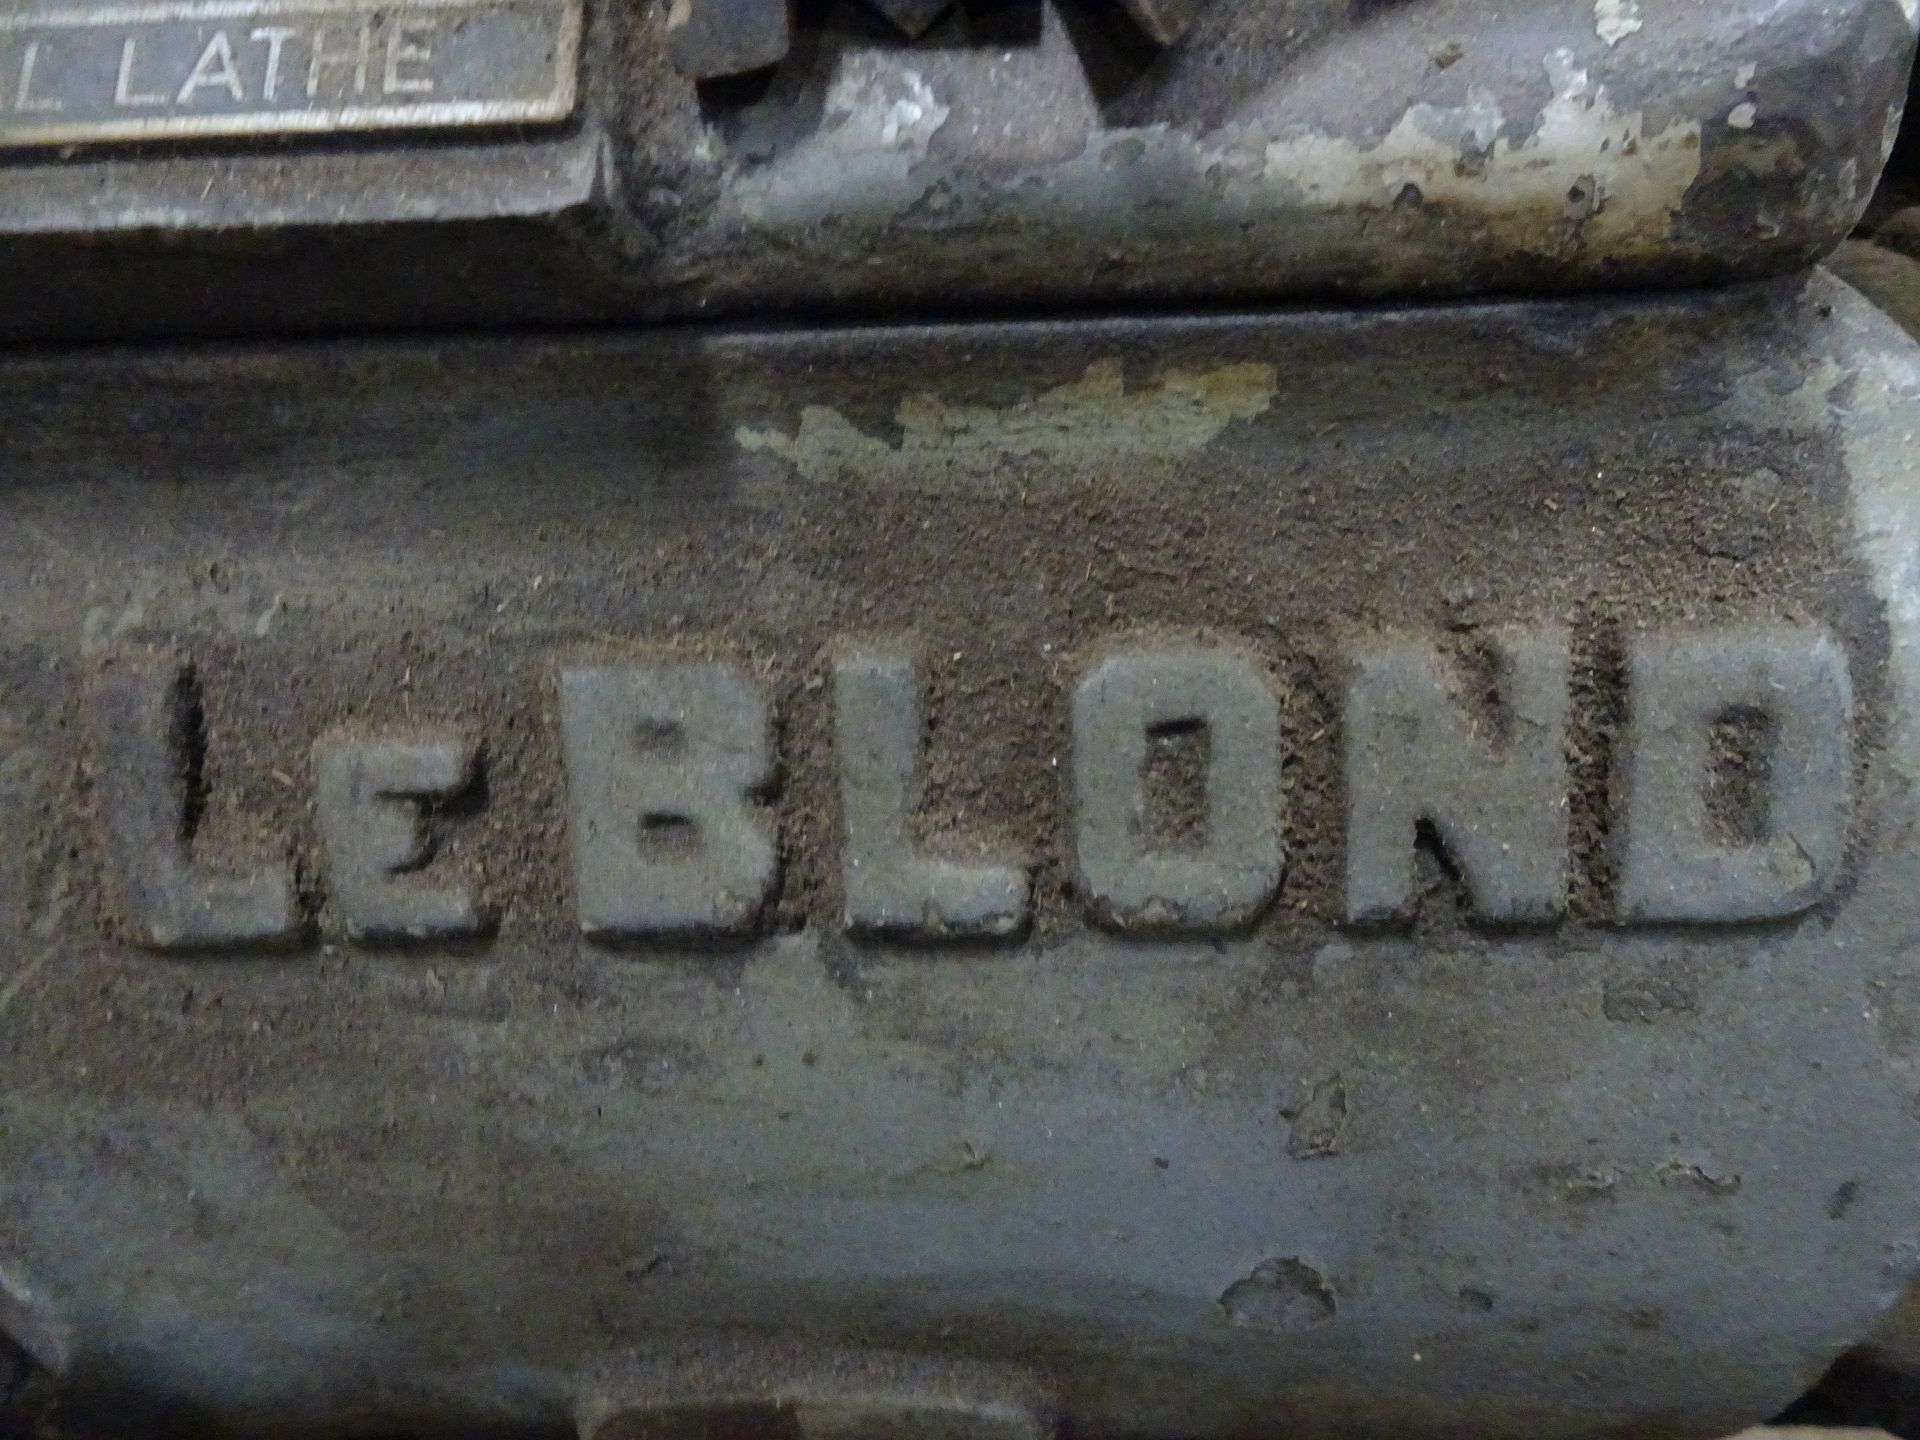 LeBlond Engine Lathe - Image 2 of 3